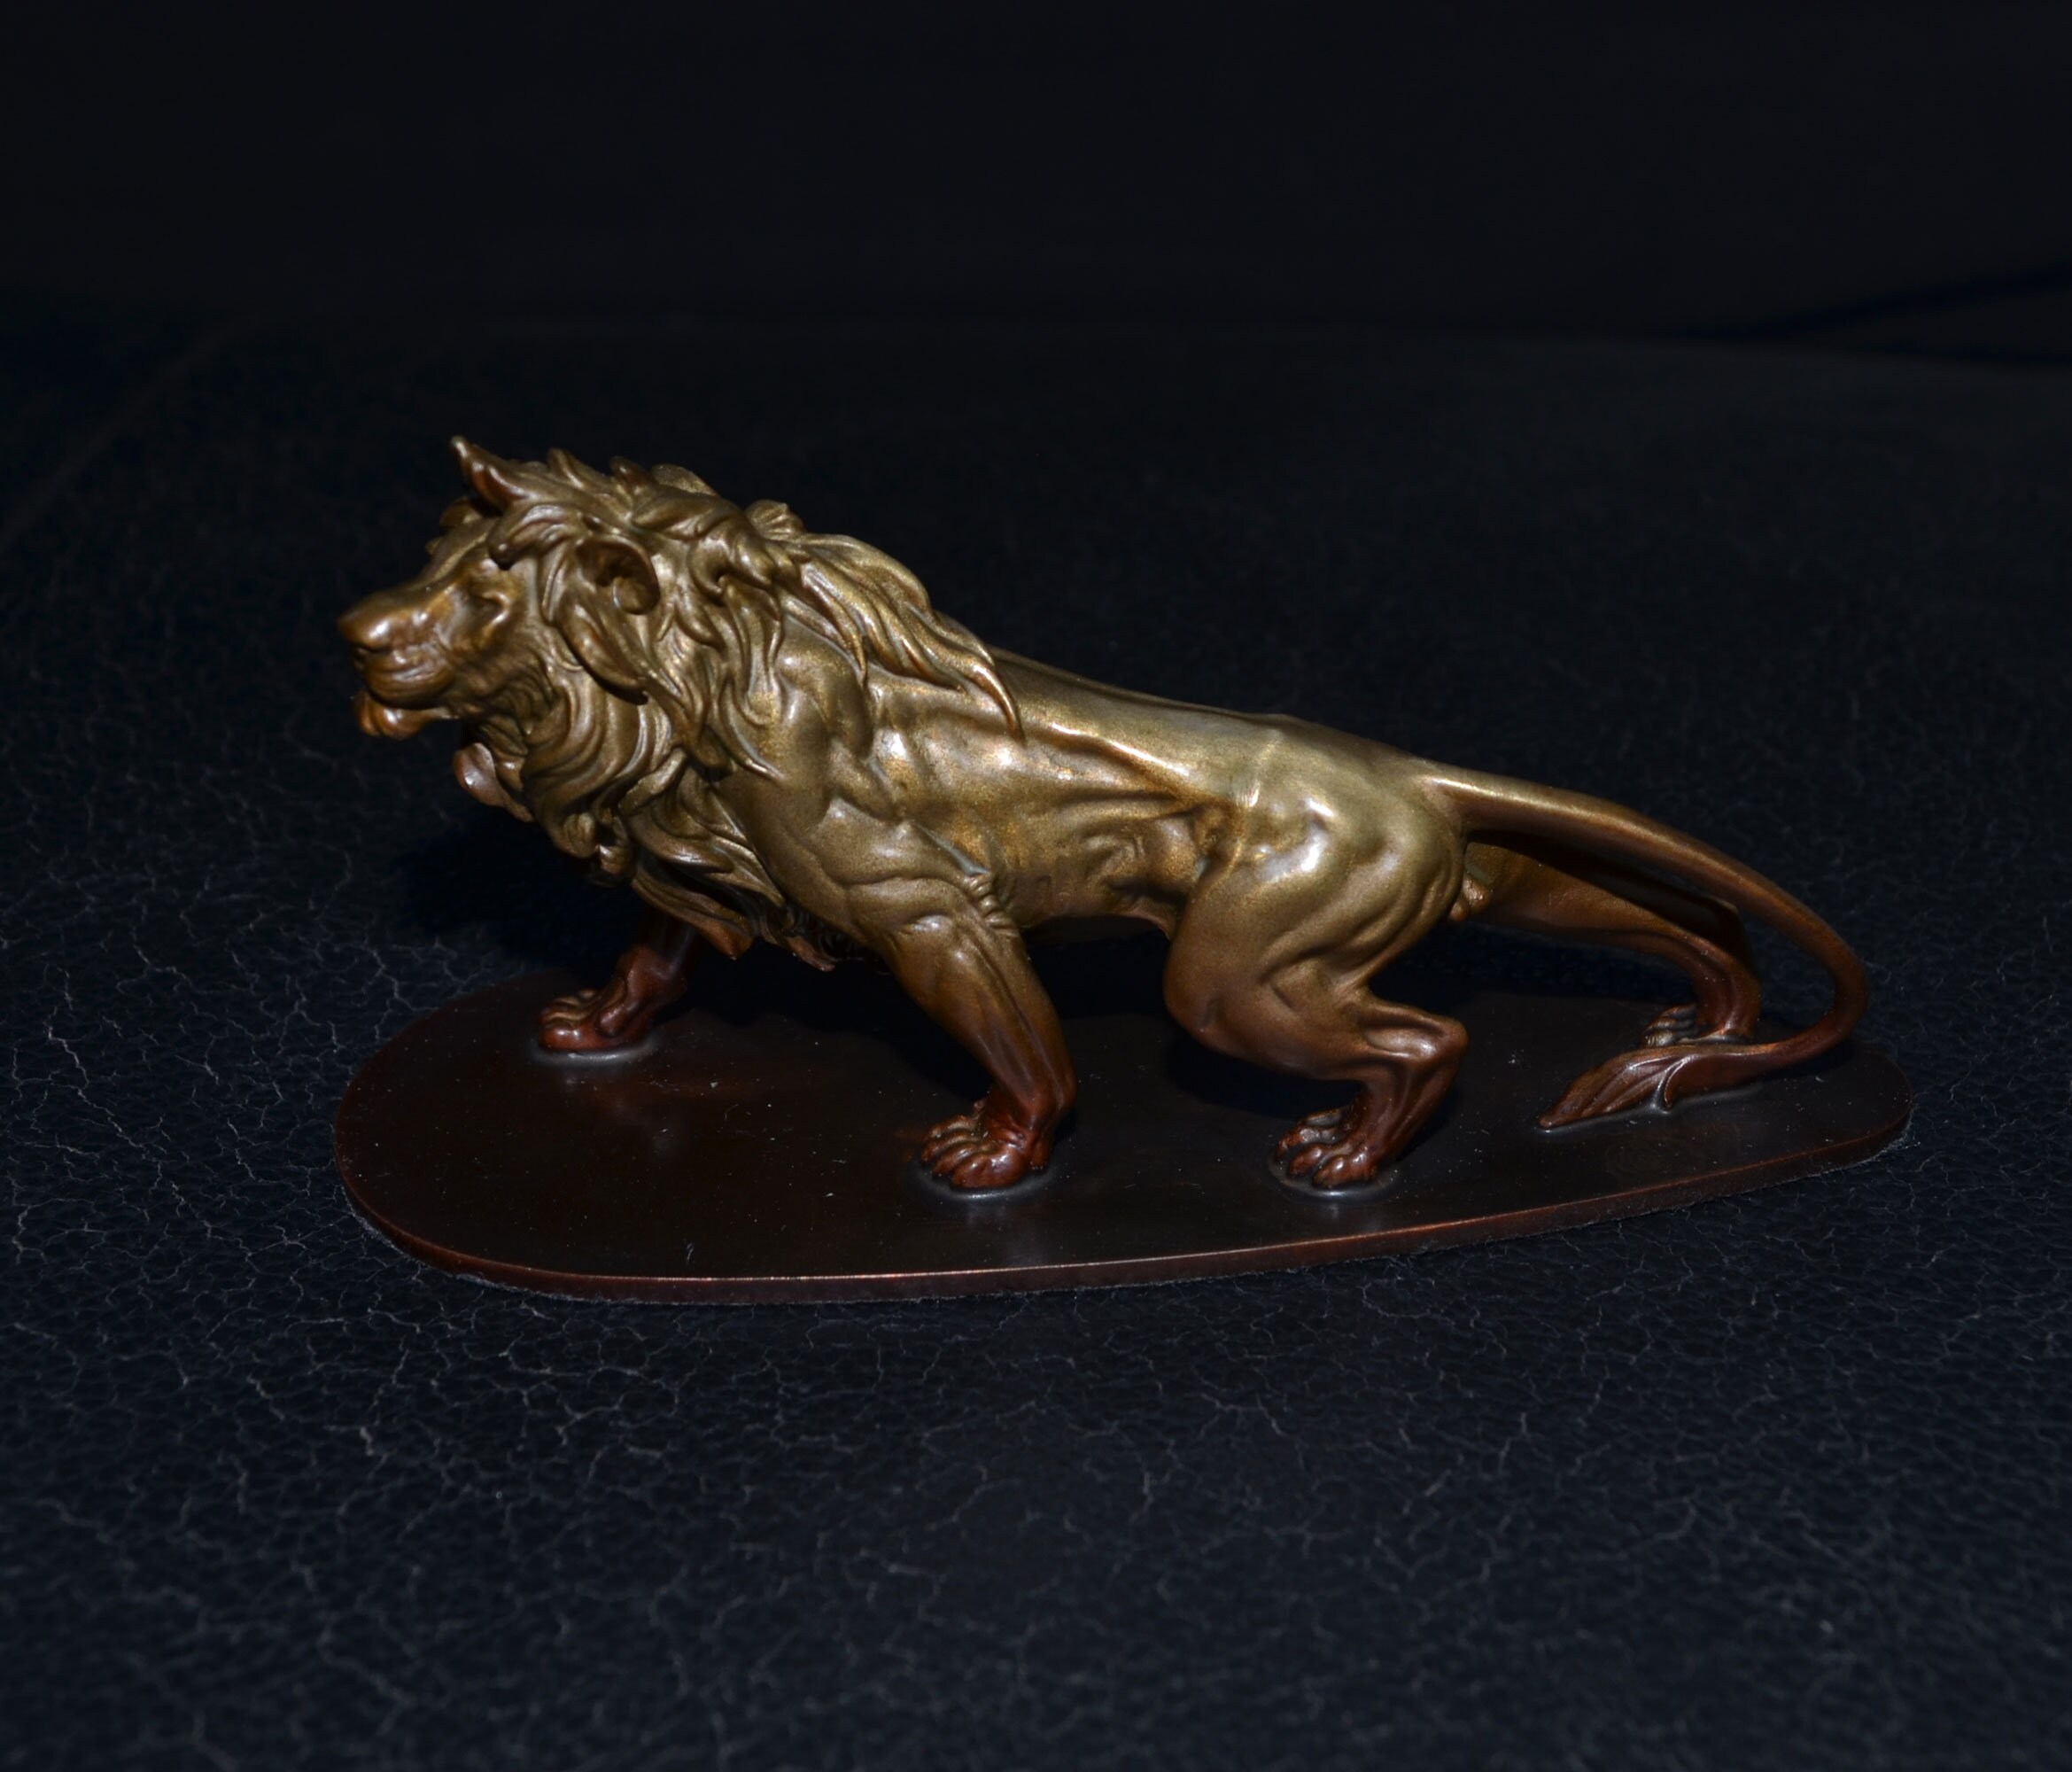 Details about  / Fine Solid Copper Brass Casting Crown Lion Statue Artwork Car Decor Home Decor